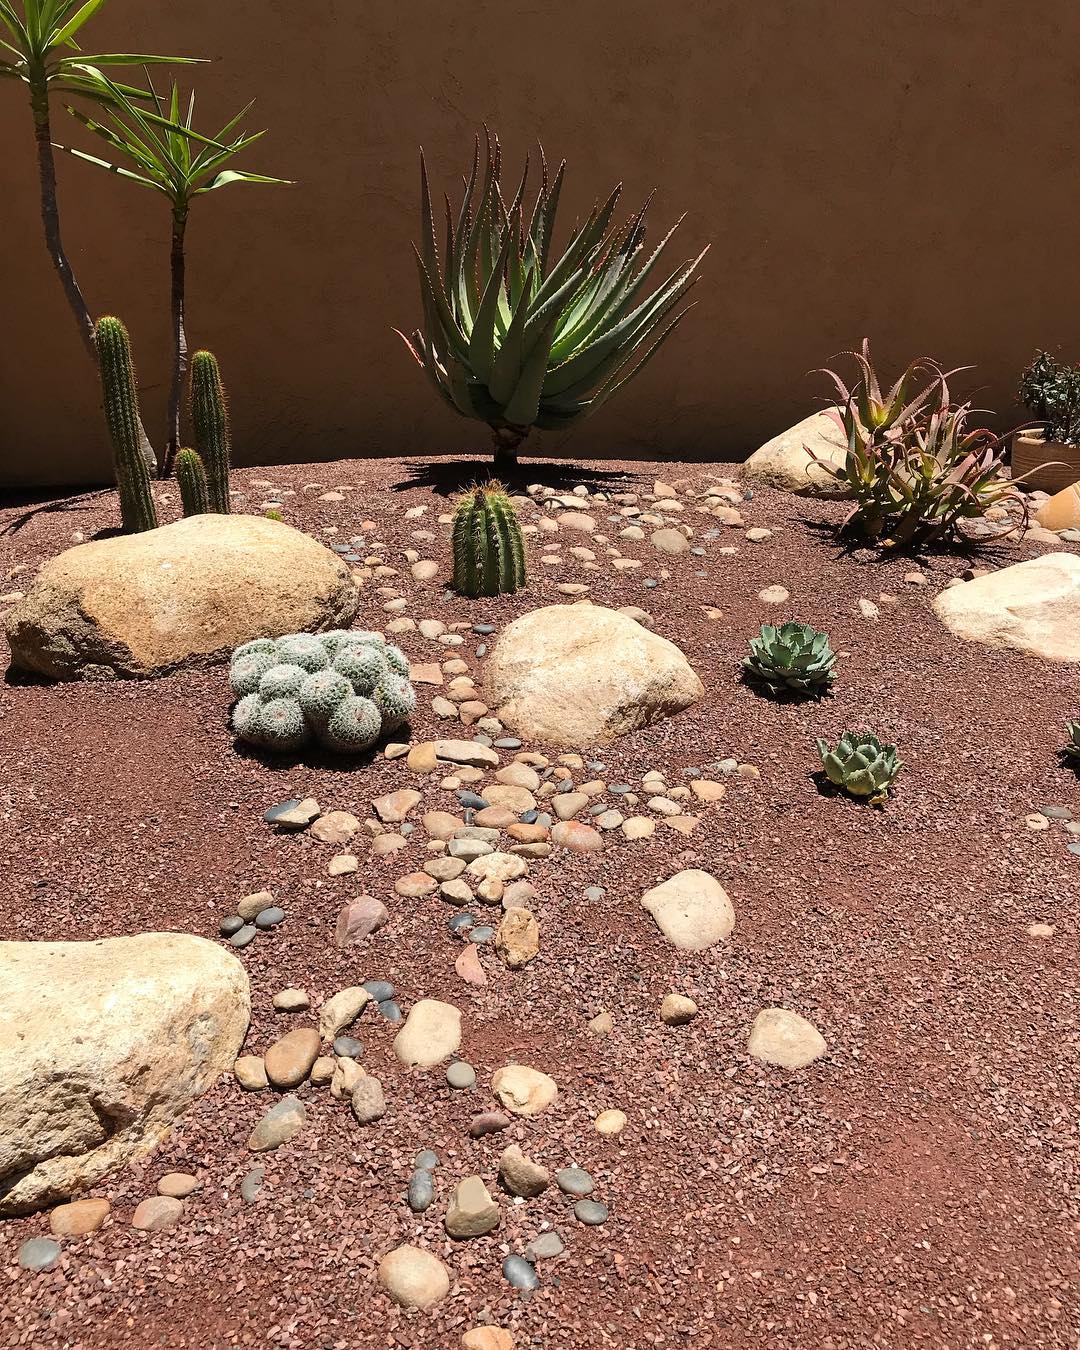 Cacti in gravel. Photo by Instagram user @desertcoastdesigns